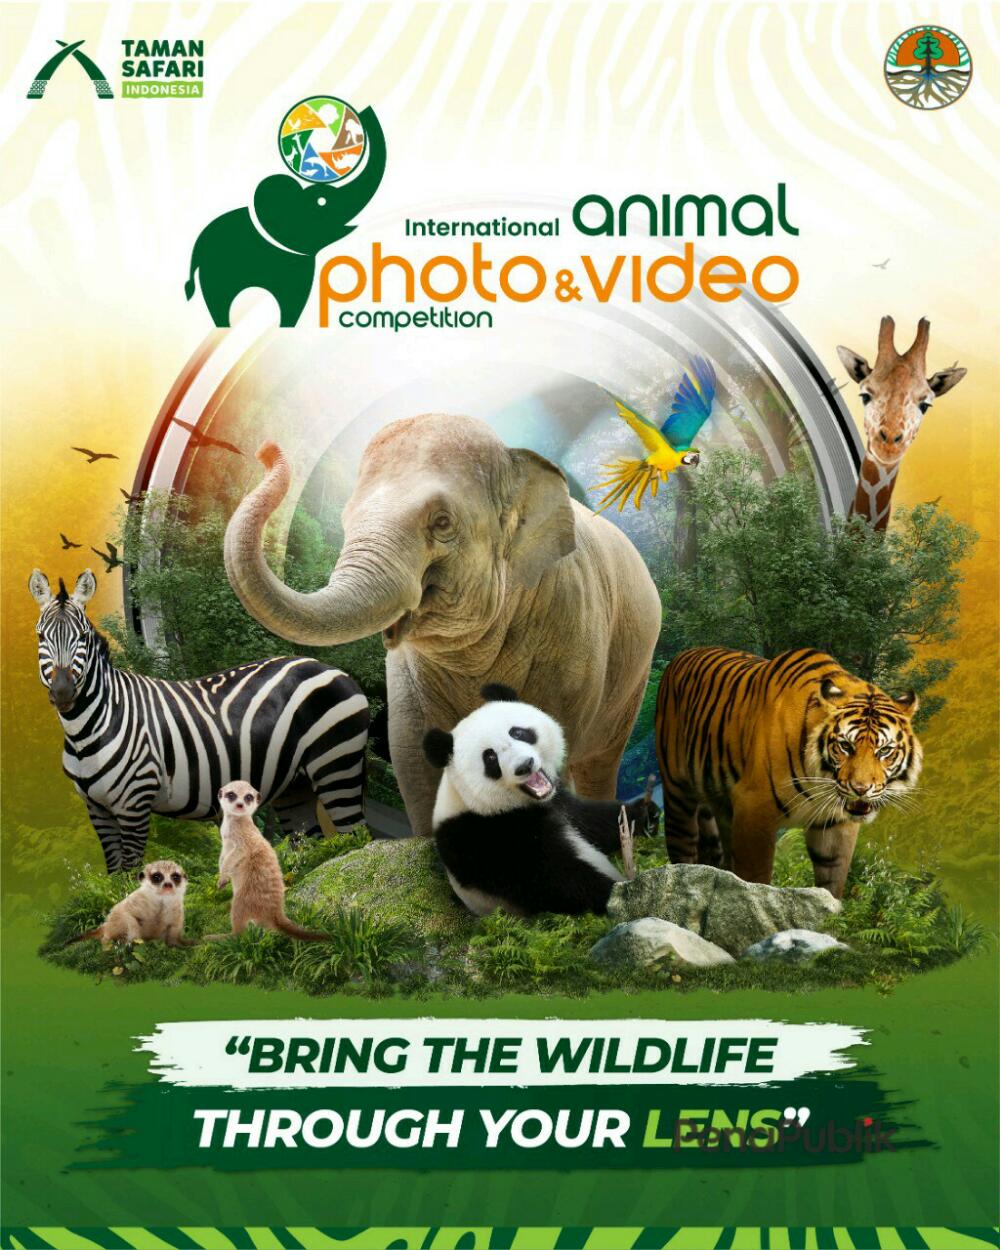 Taman-Safari-Indonesia-Kembali-Hadirkan-Lomba-Photo-dan-Video-Satwa-Skala-Internasional.jpg